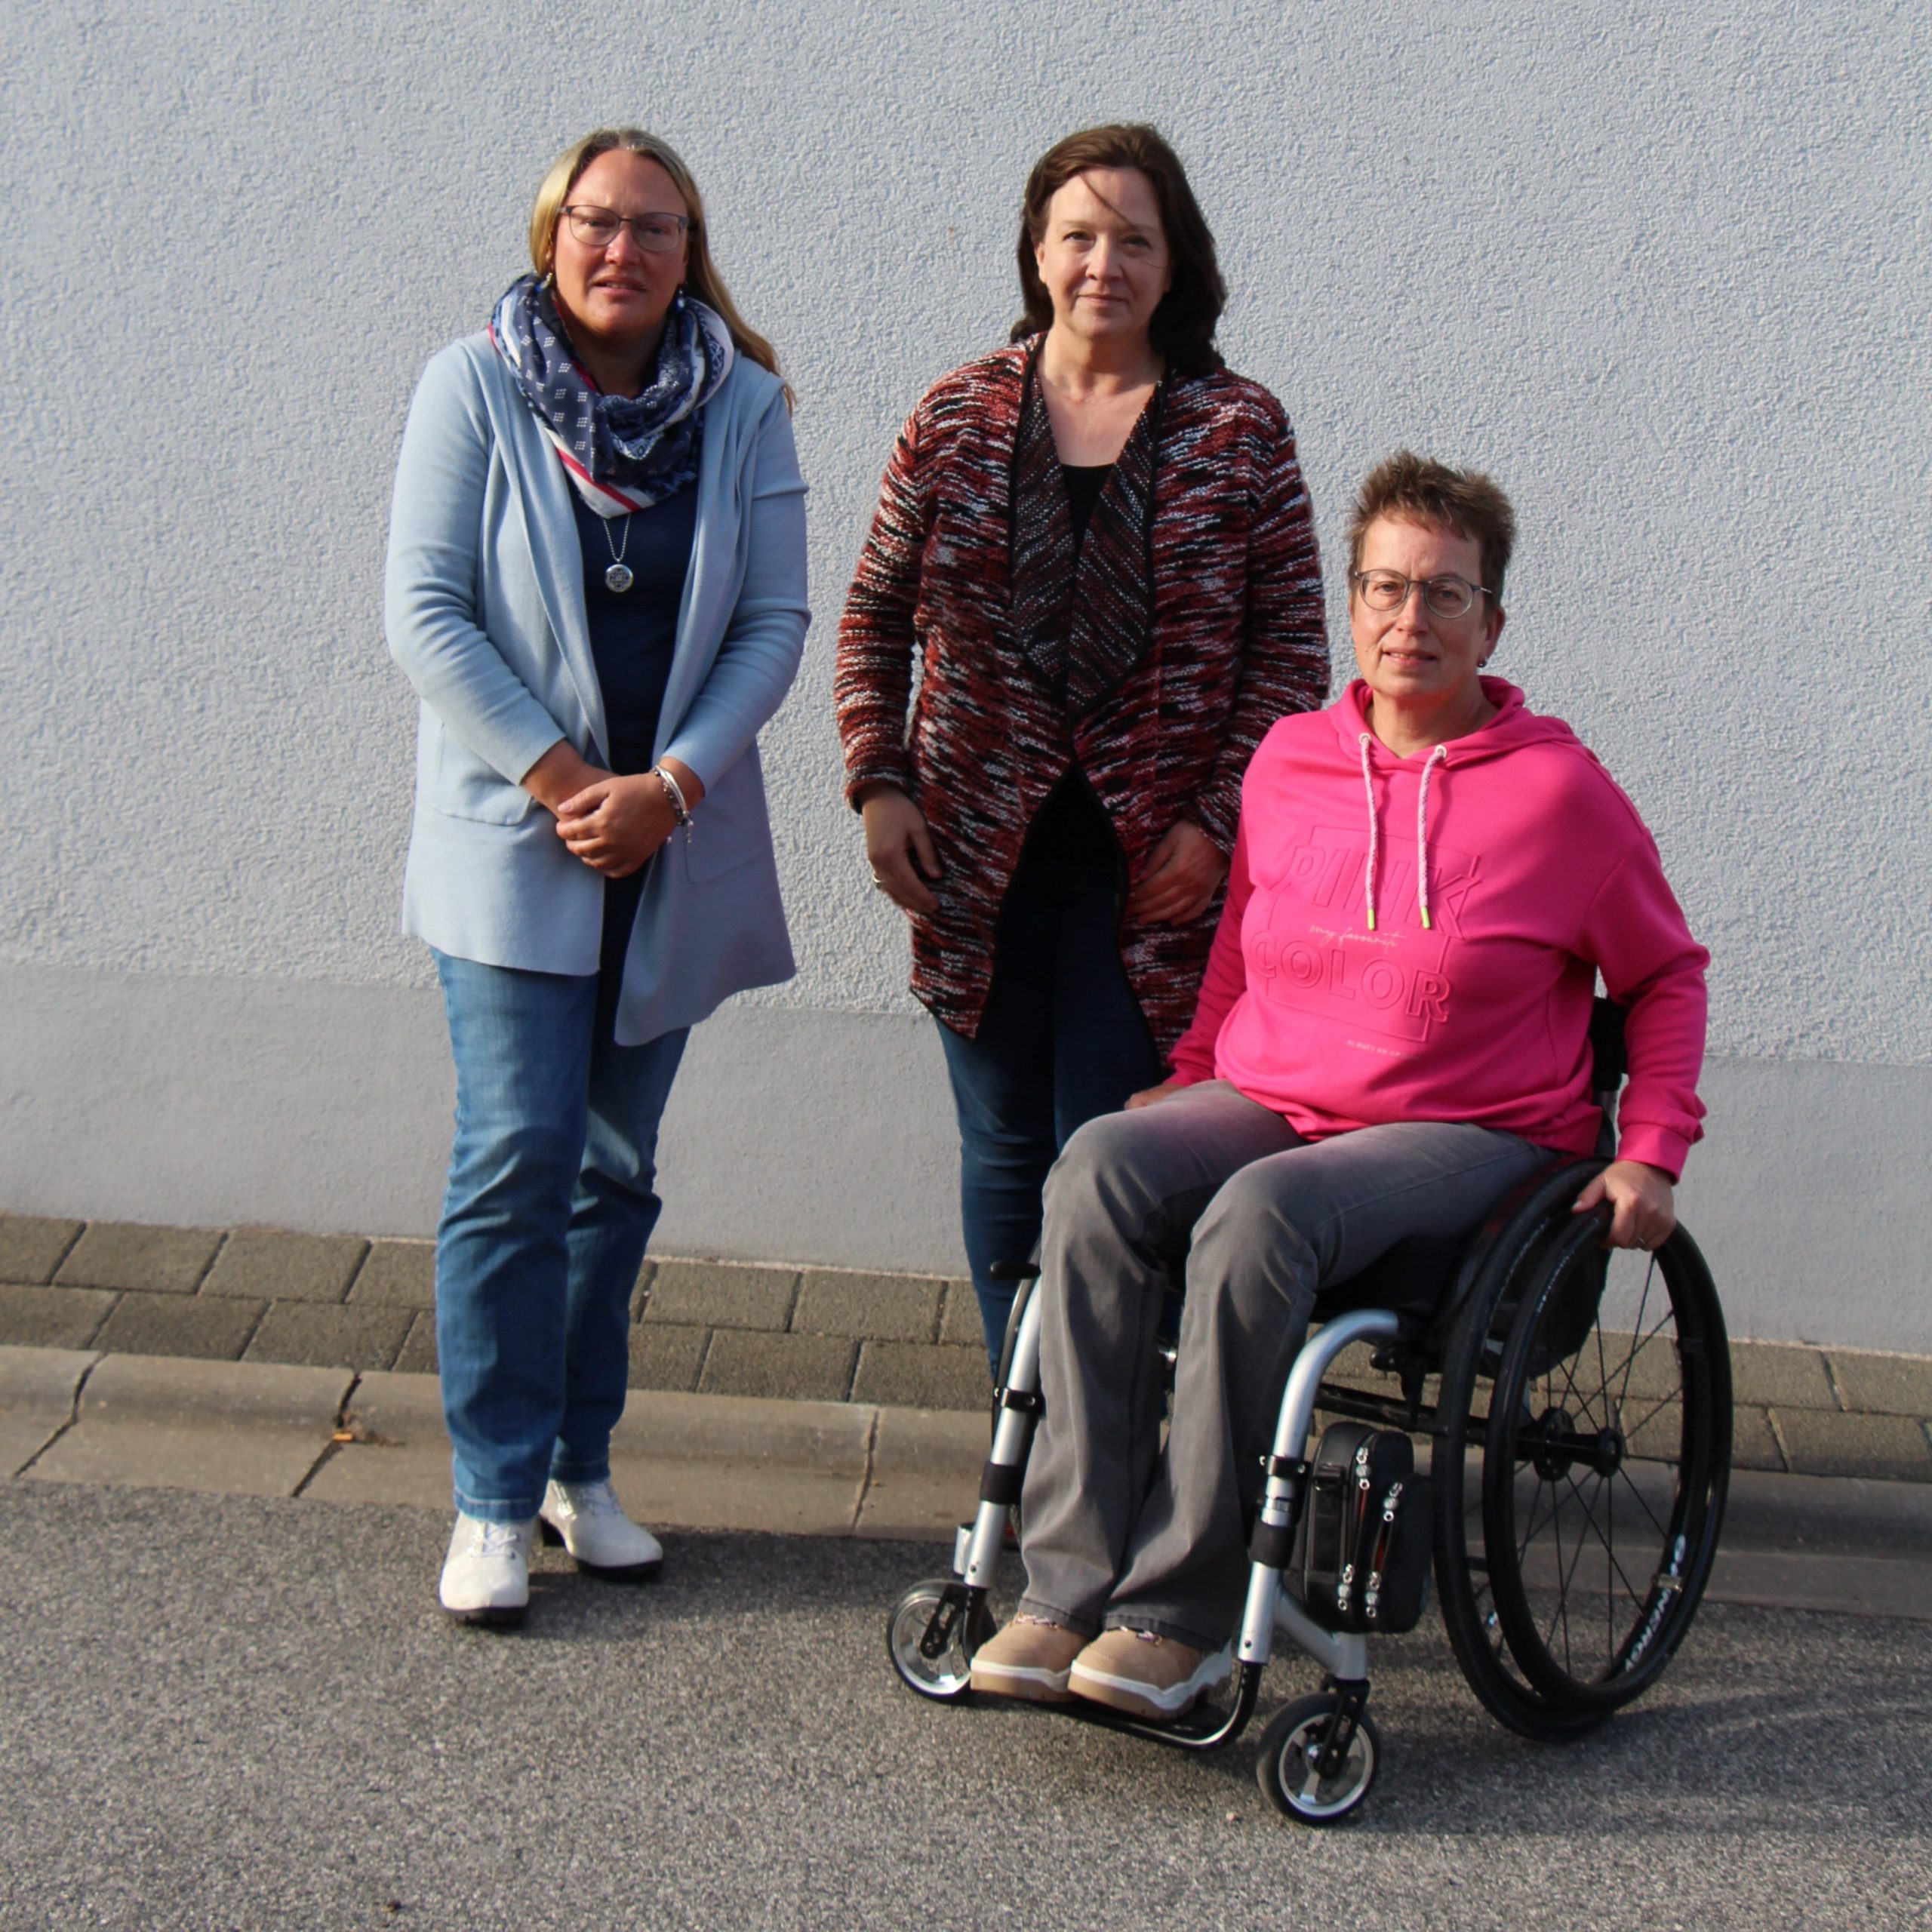 Die neue Vorsitzende und ihre Stellverteterinnen. 2 Frauen stehend und 1 Frau im Rollstuhl.